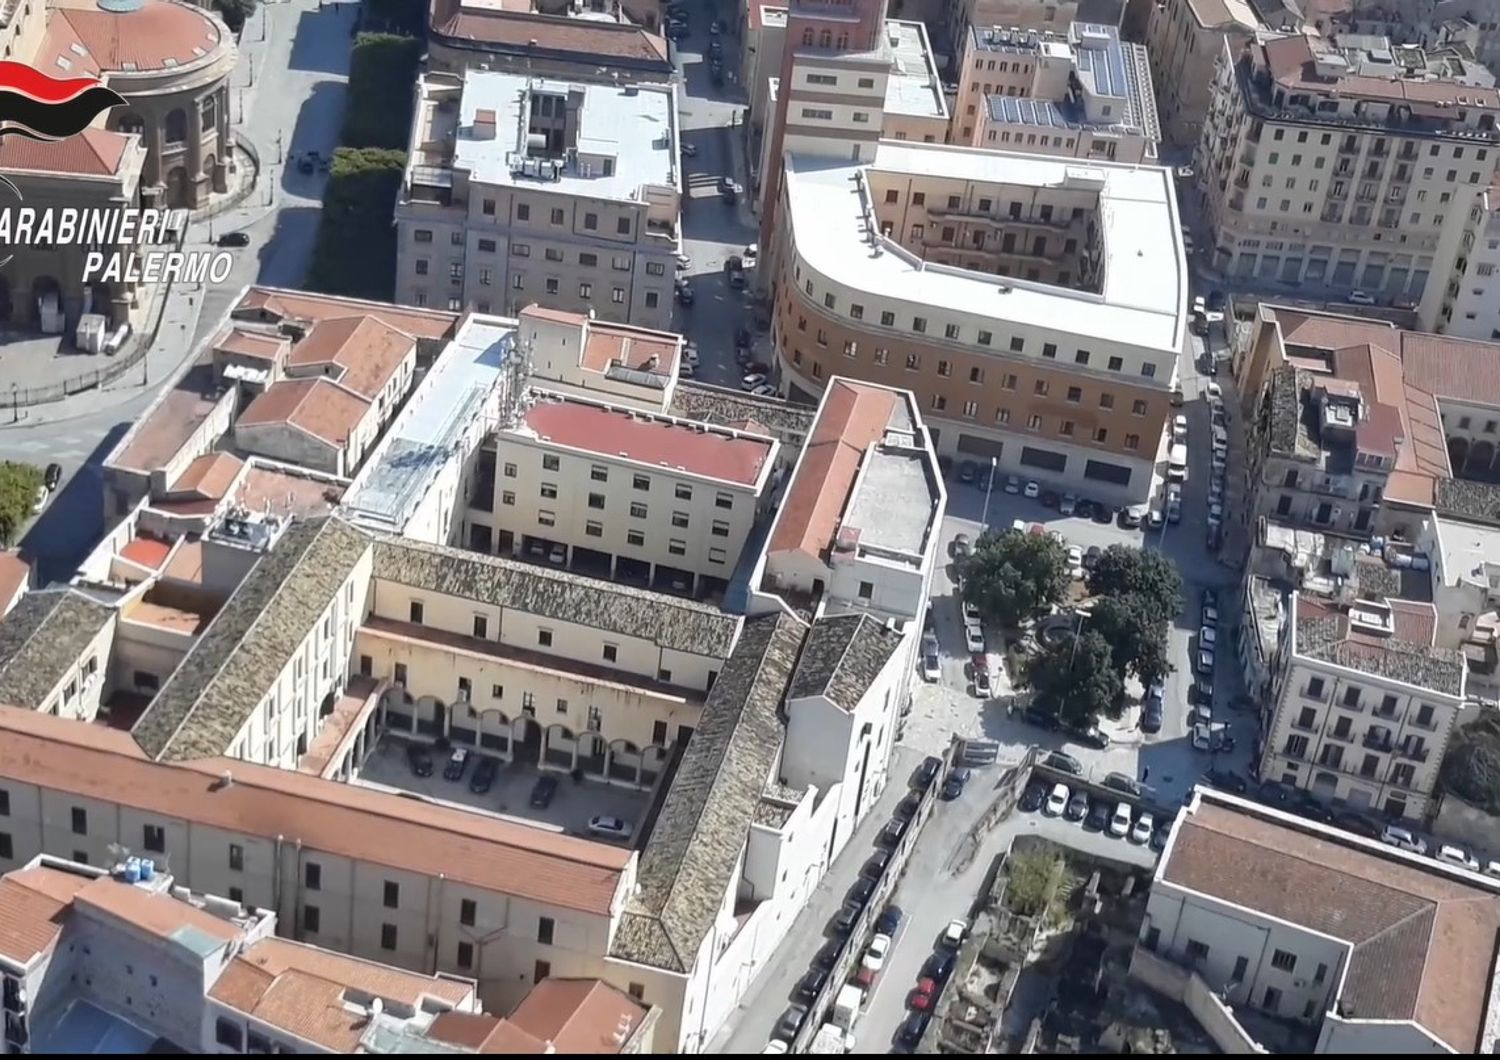 Le case popolari di Palermo